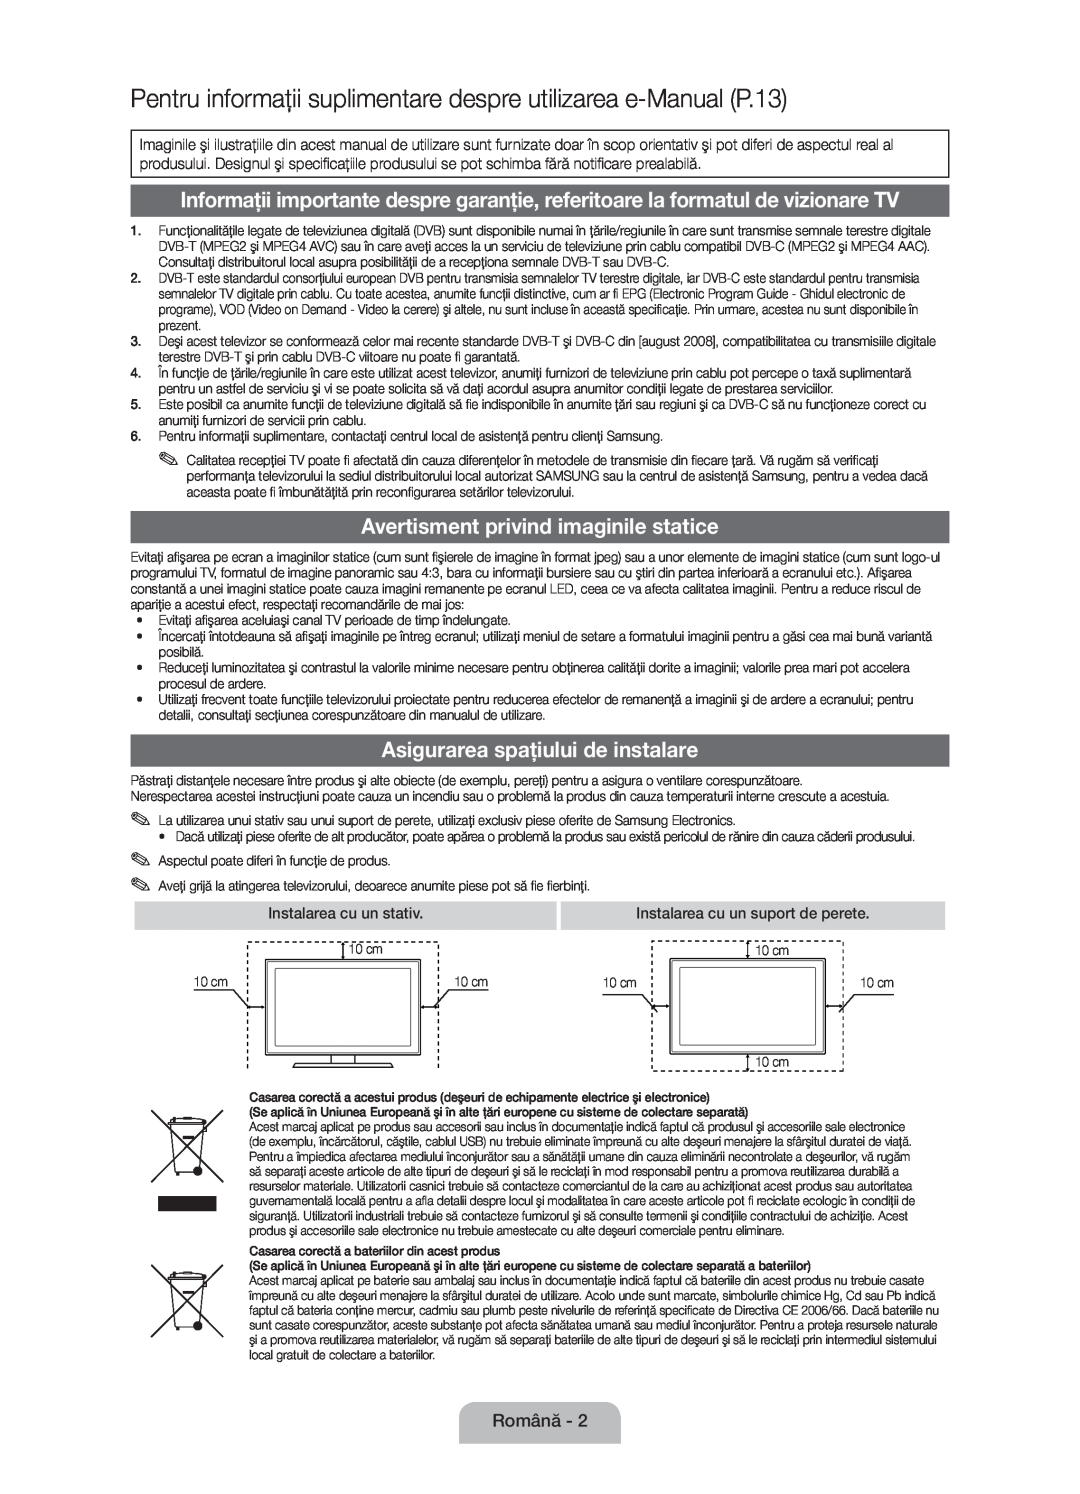 Samsung UE32D5000PWXZT Pentru informaţii suplimentare despre utilizarea e-Manual P.13, Asigurarea spaţiului de instalare 